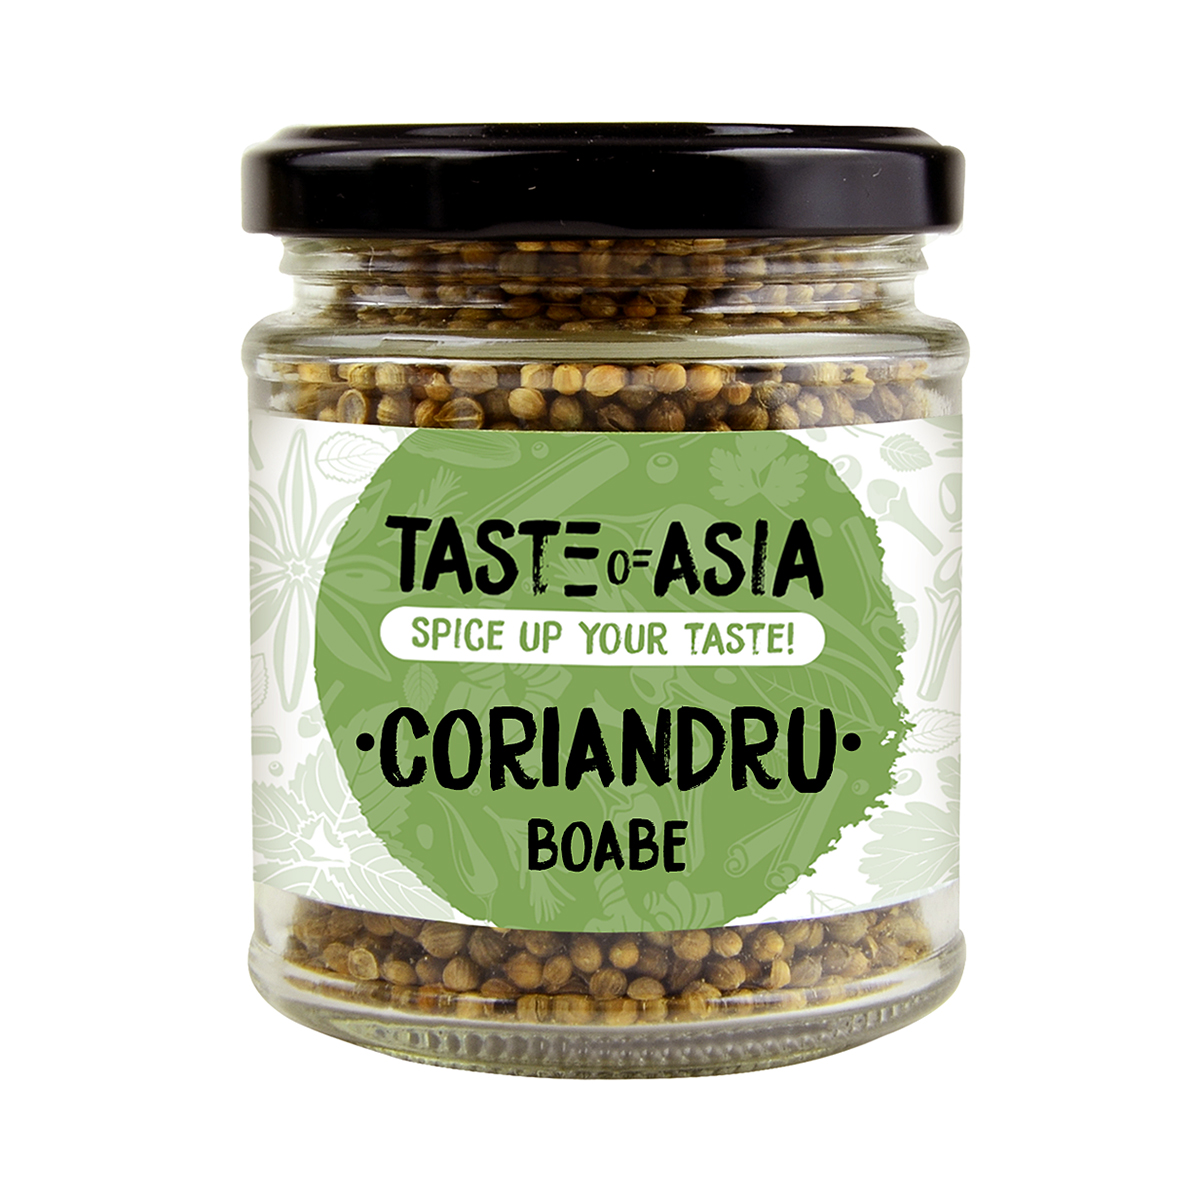 Private Label Taste of Asia - Coriandru boabe TOA 50g, asianfood.ro